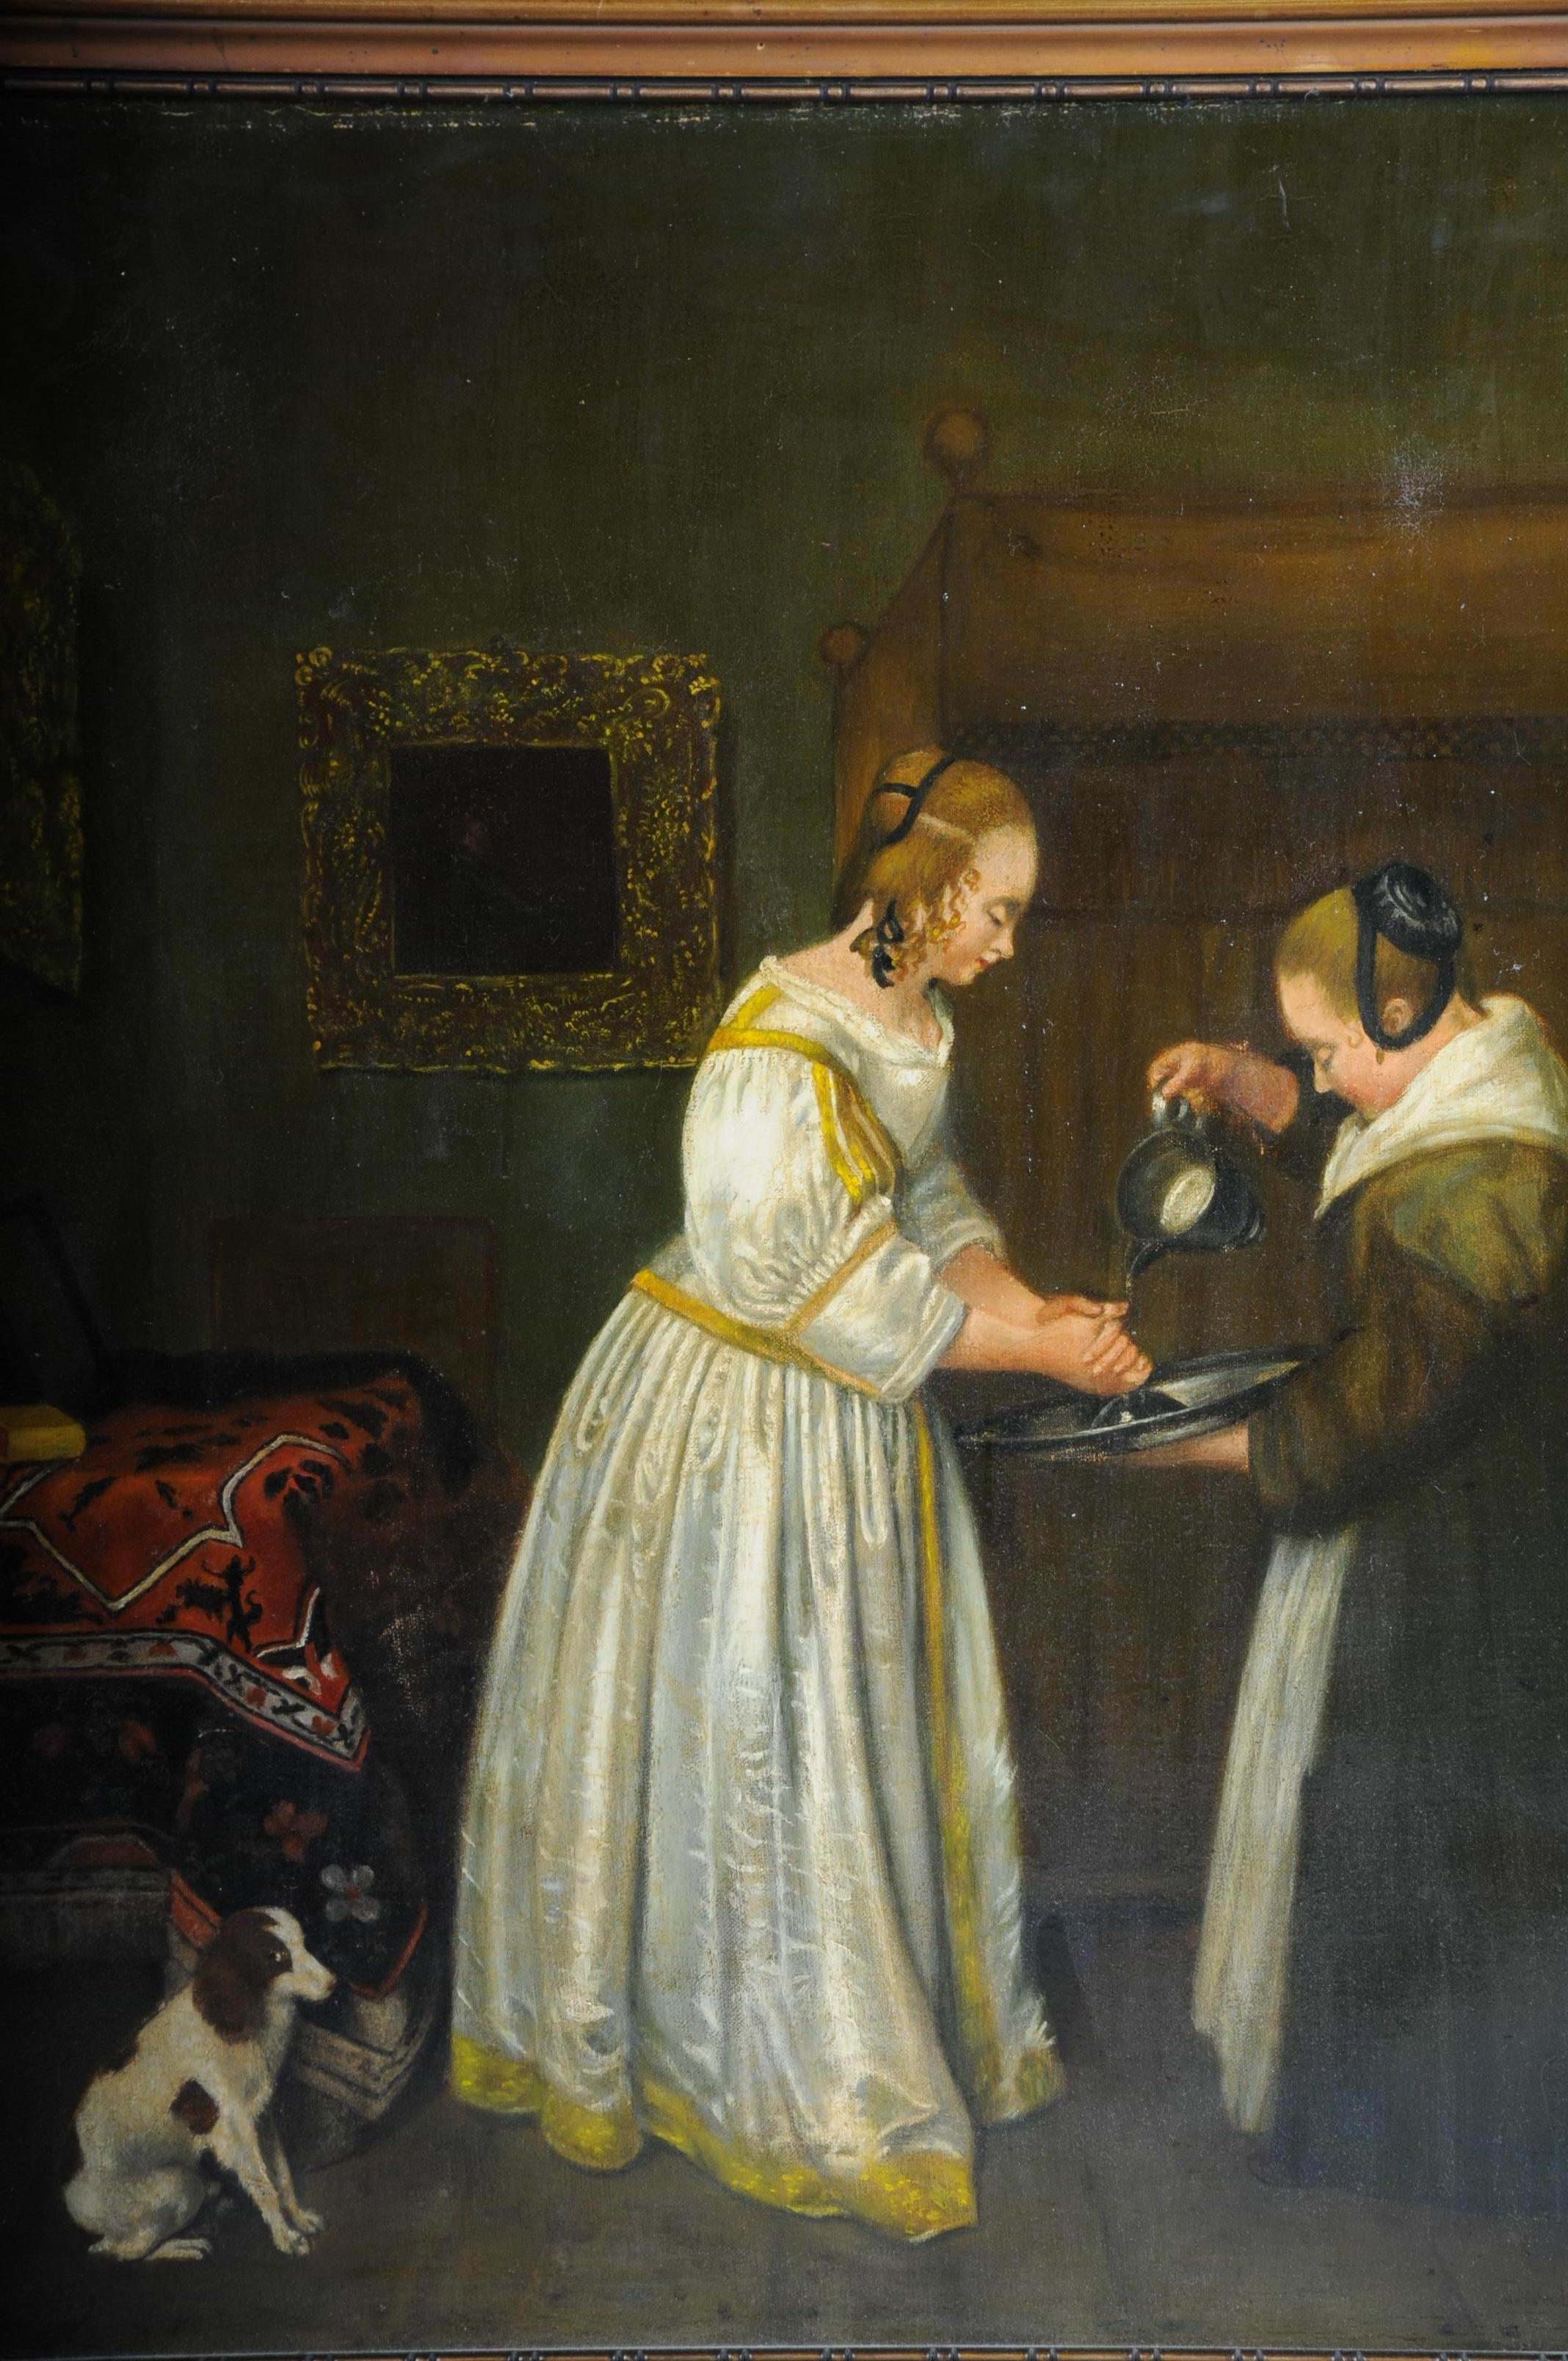 Altes Ölgemälde nach J. Vermeer-Manier, alter Meister, um 1900

Öl auf Leinwand. Handgemalt in der Art von J. Vermeer. Hochwertiger Maler, der eine Hausherrin darstellt, die sich von einer Dienerin die Hände waschen lässt. Hinter ihr sitzt ein